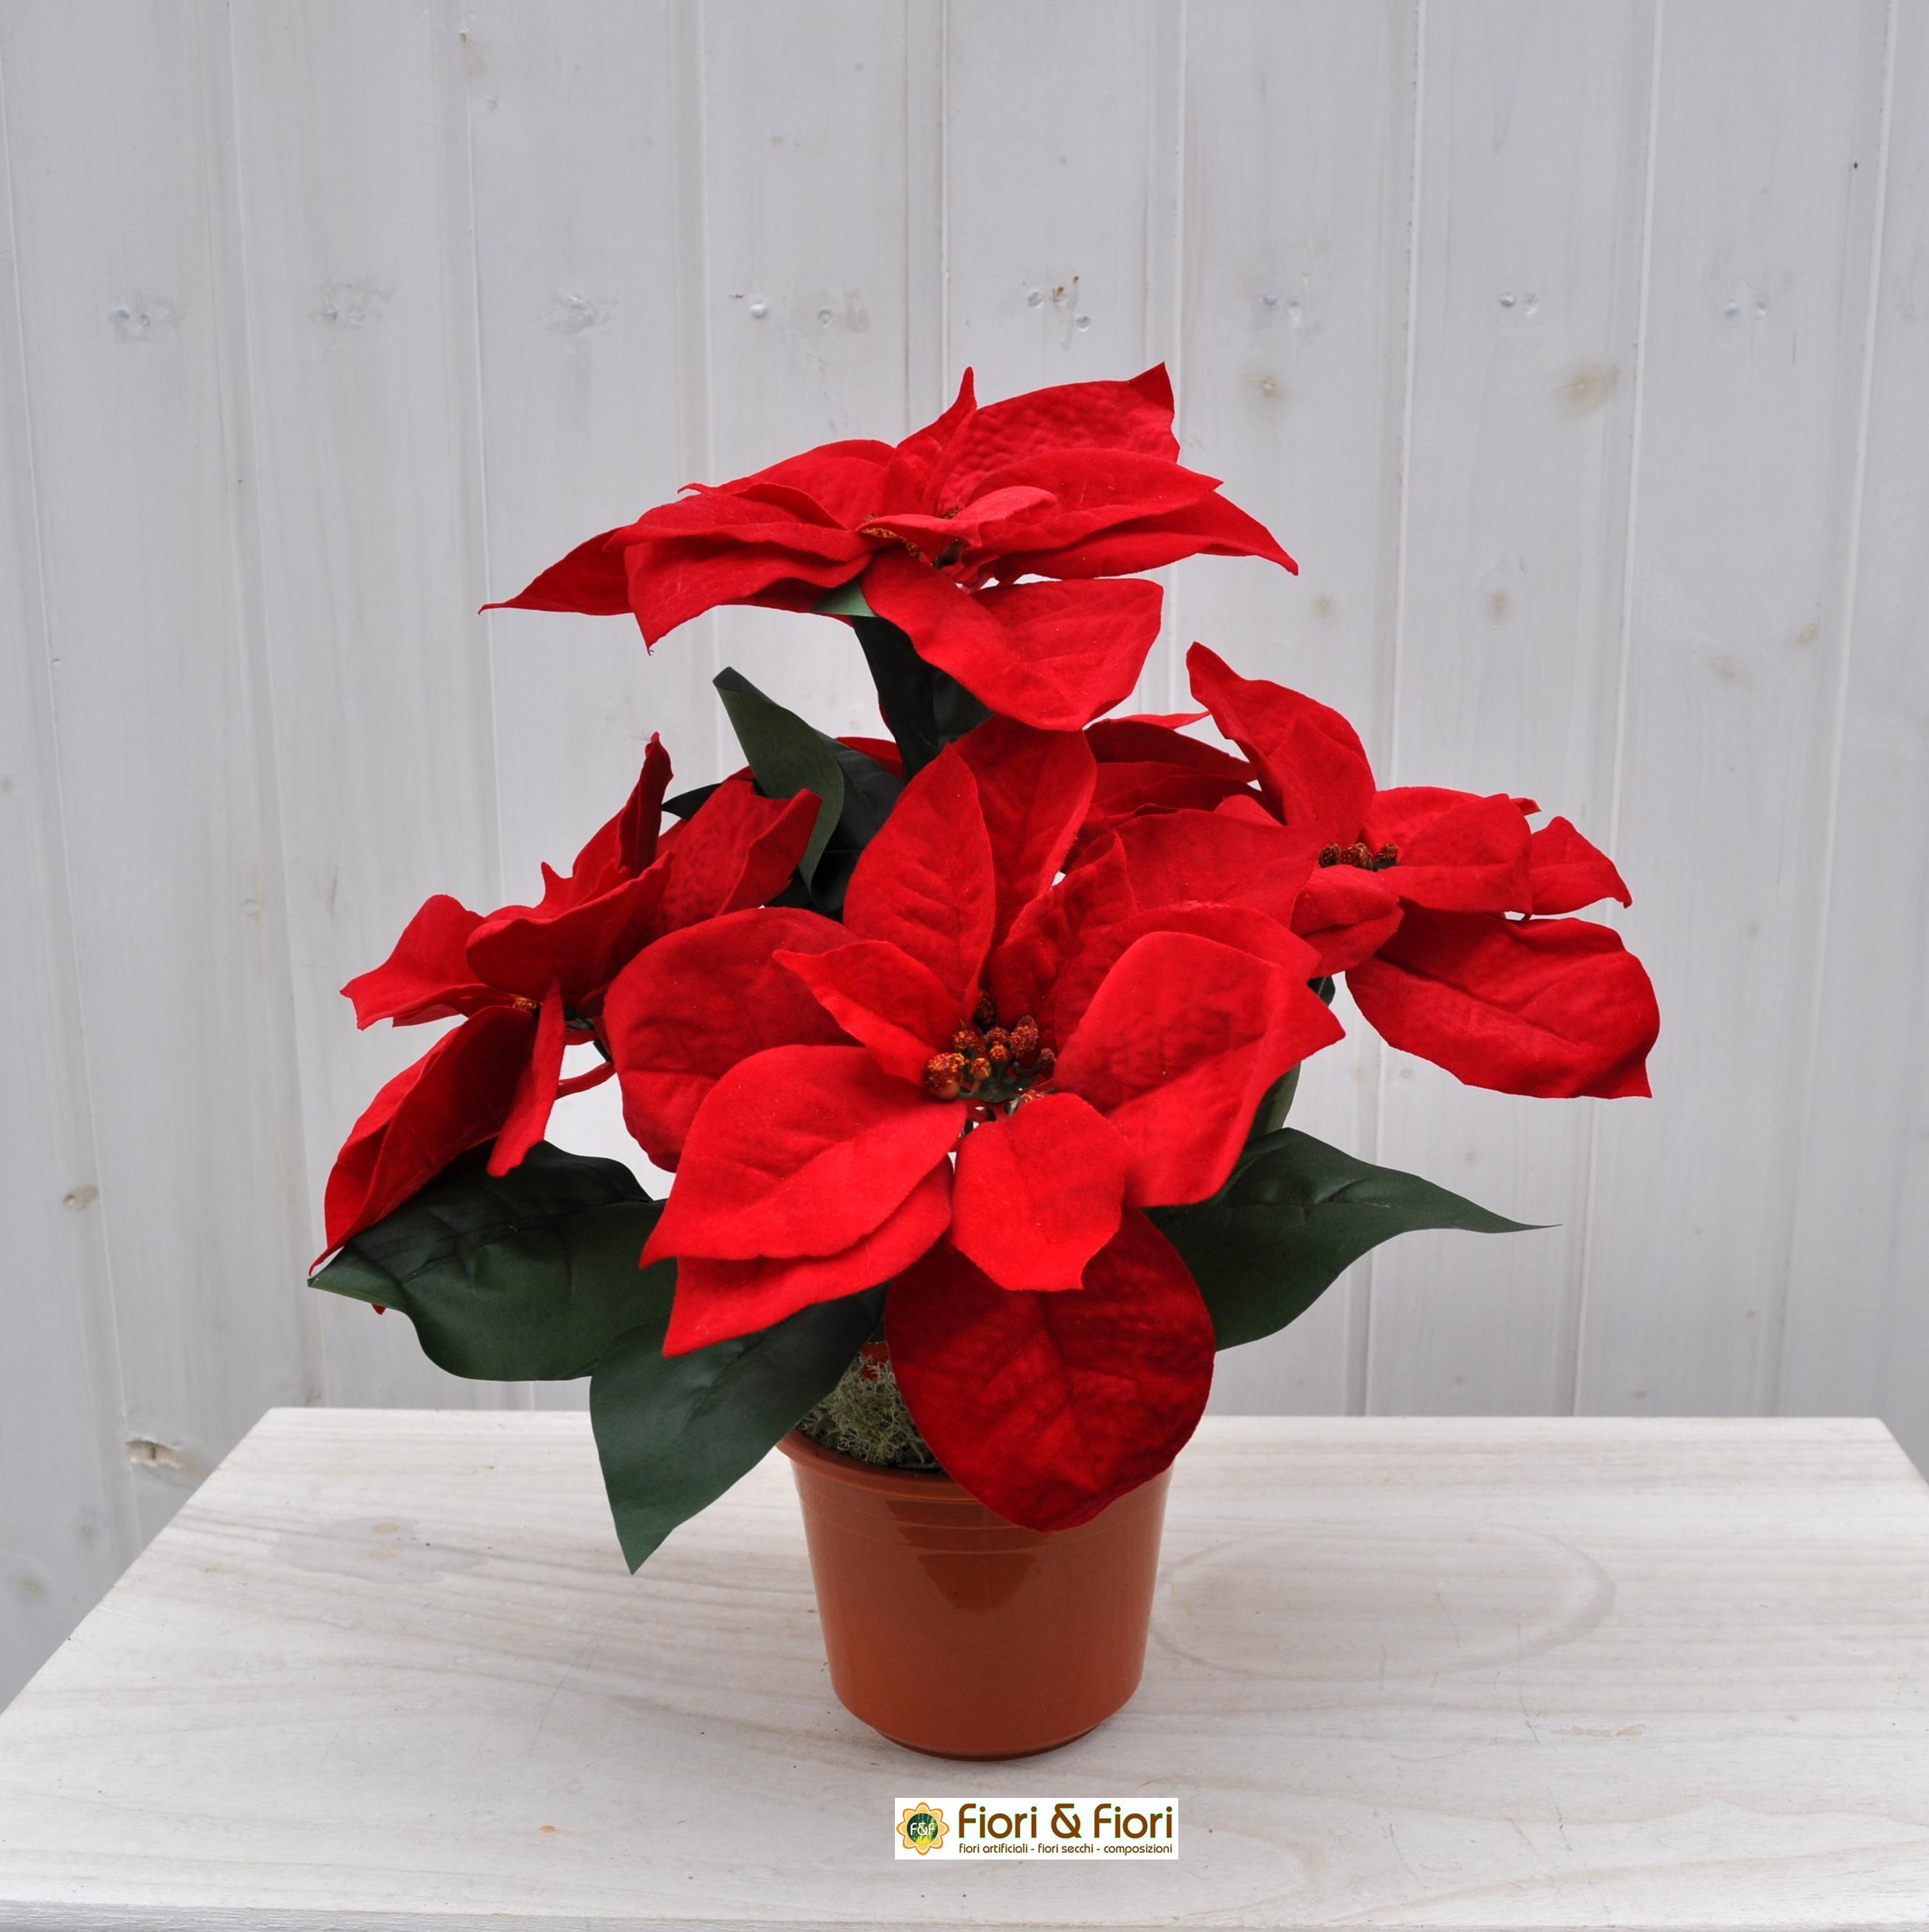 La Stella Di Natale Pianta.Stella Di Natale Artificiale Rossa Grande In Vaso Con Fiori In Tessuto